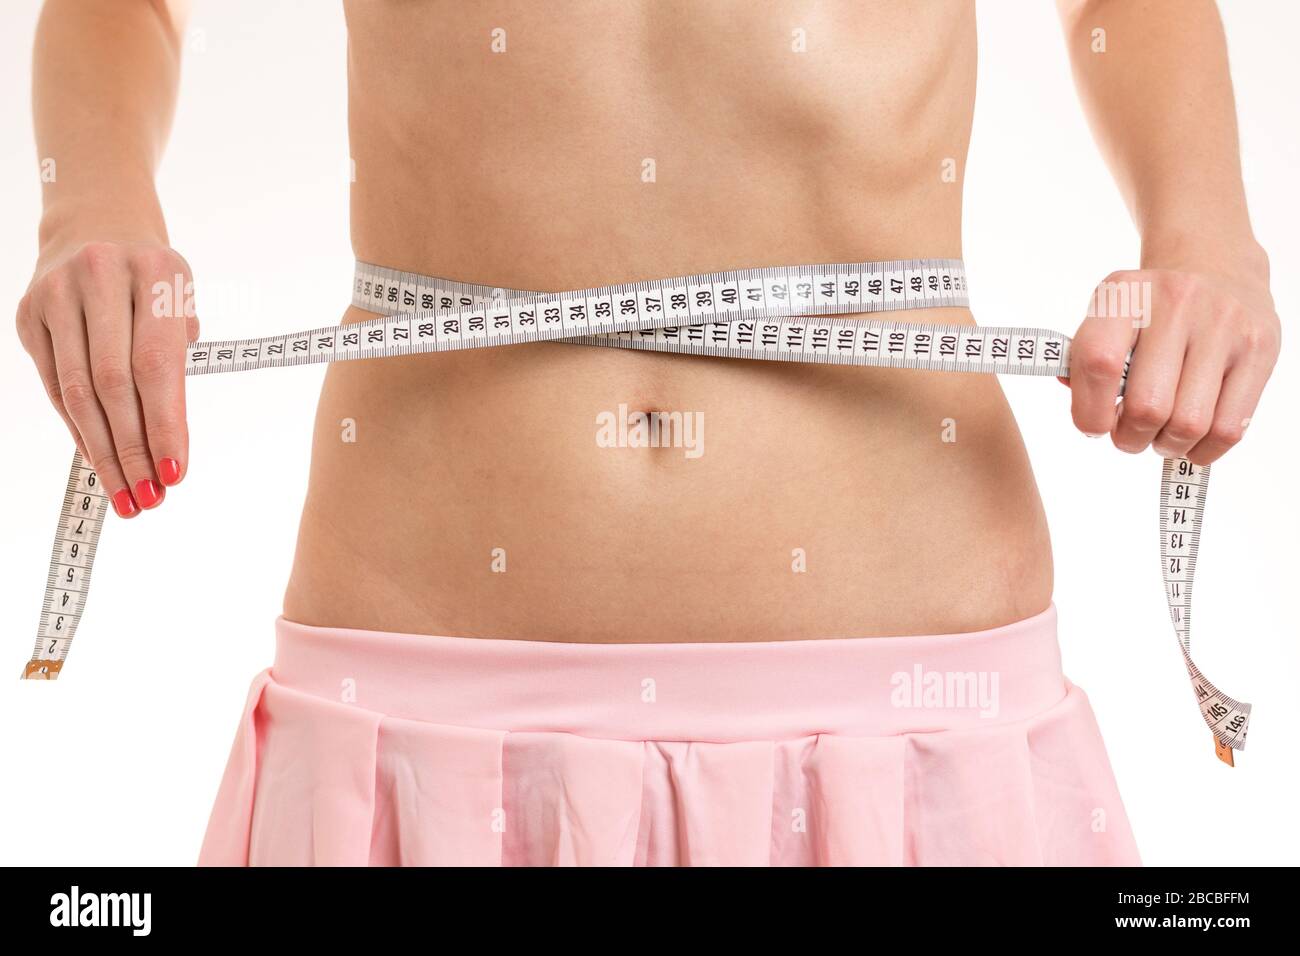 Slim Mädchen mit rosa Rock misst ihre dünne Taille mit einem Band Maßnahme. Lizenzfreies Stock Foto. Stockfoto